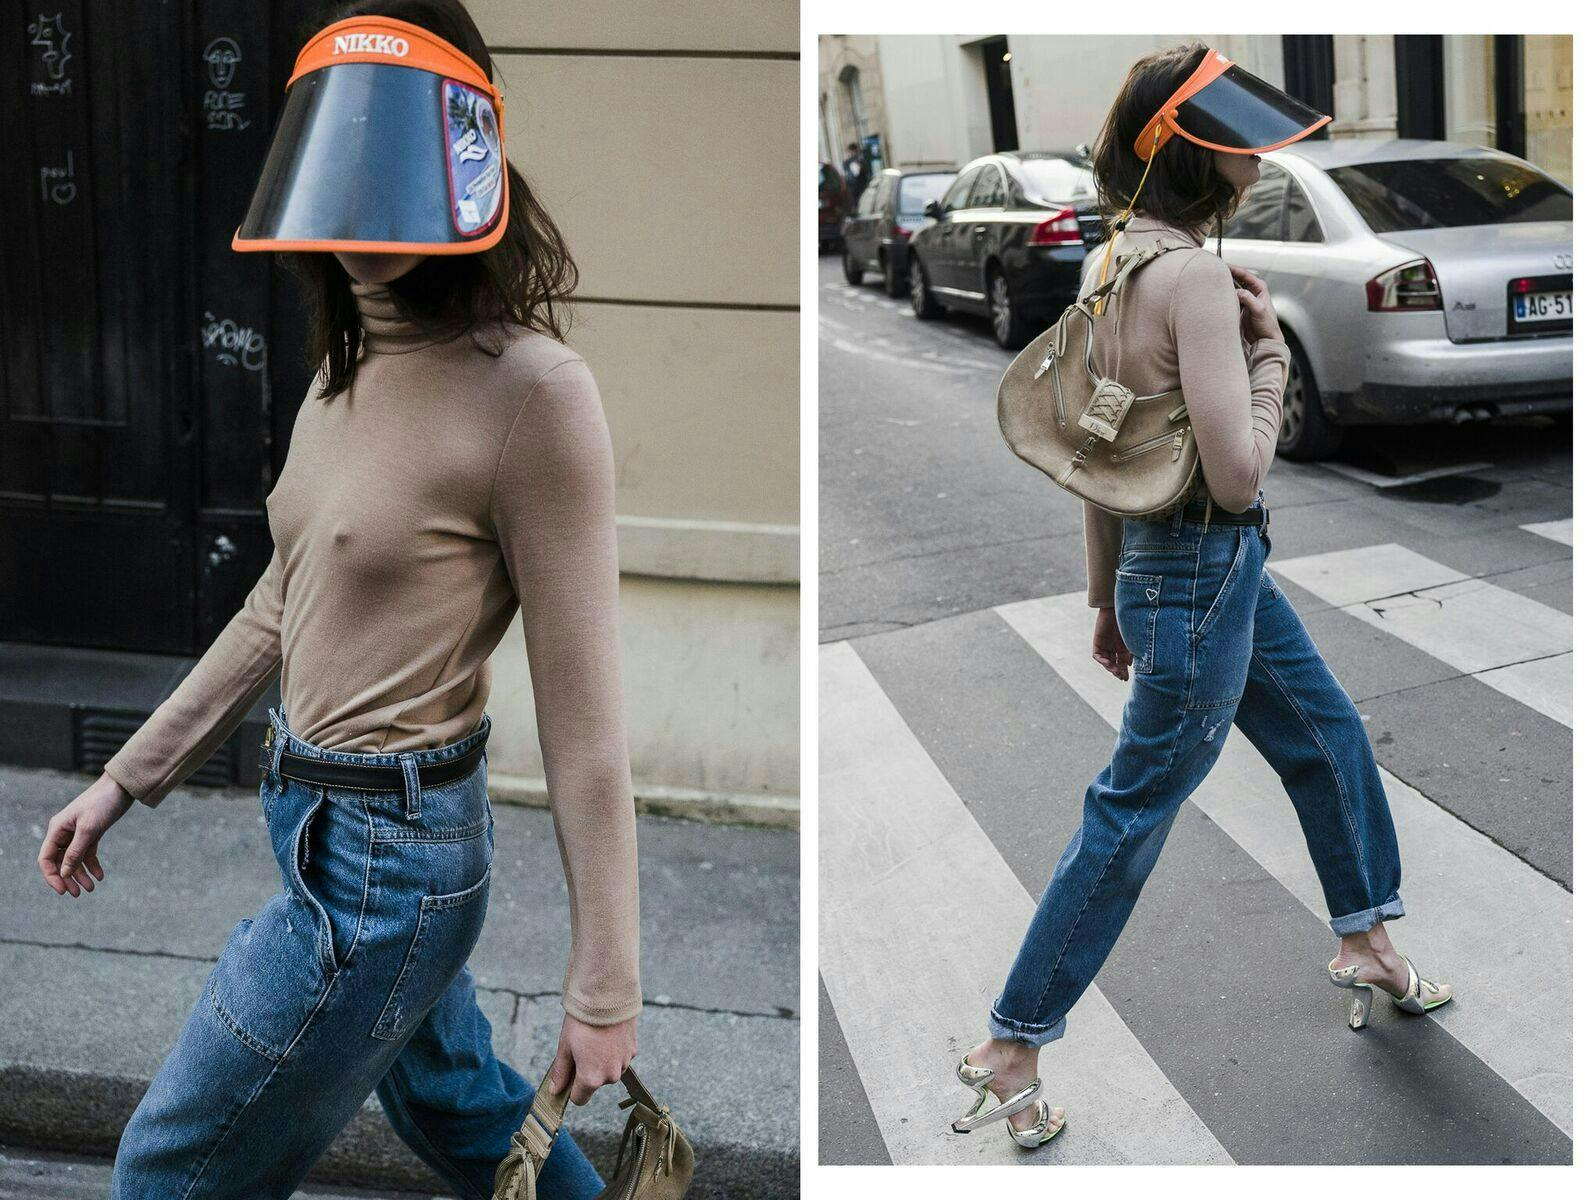 clothing person jeans pants car transportation vehicle helmet shoe hat